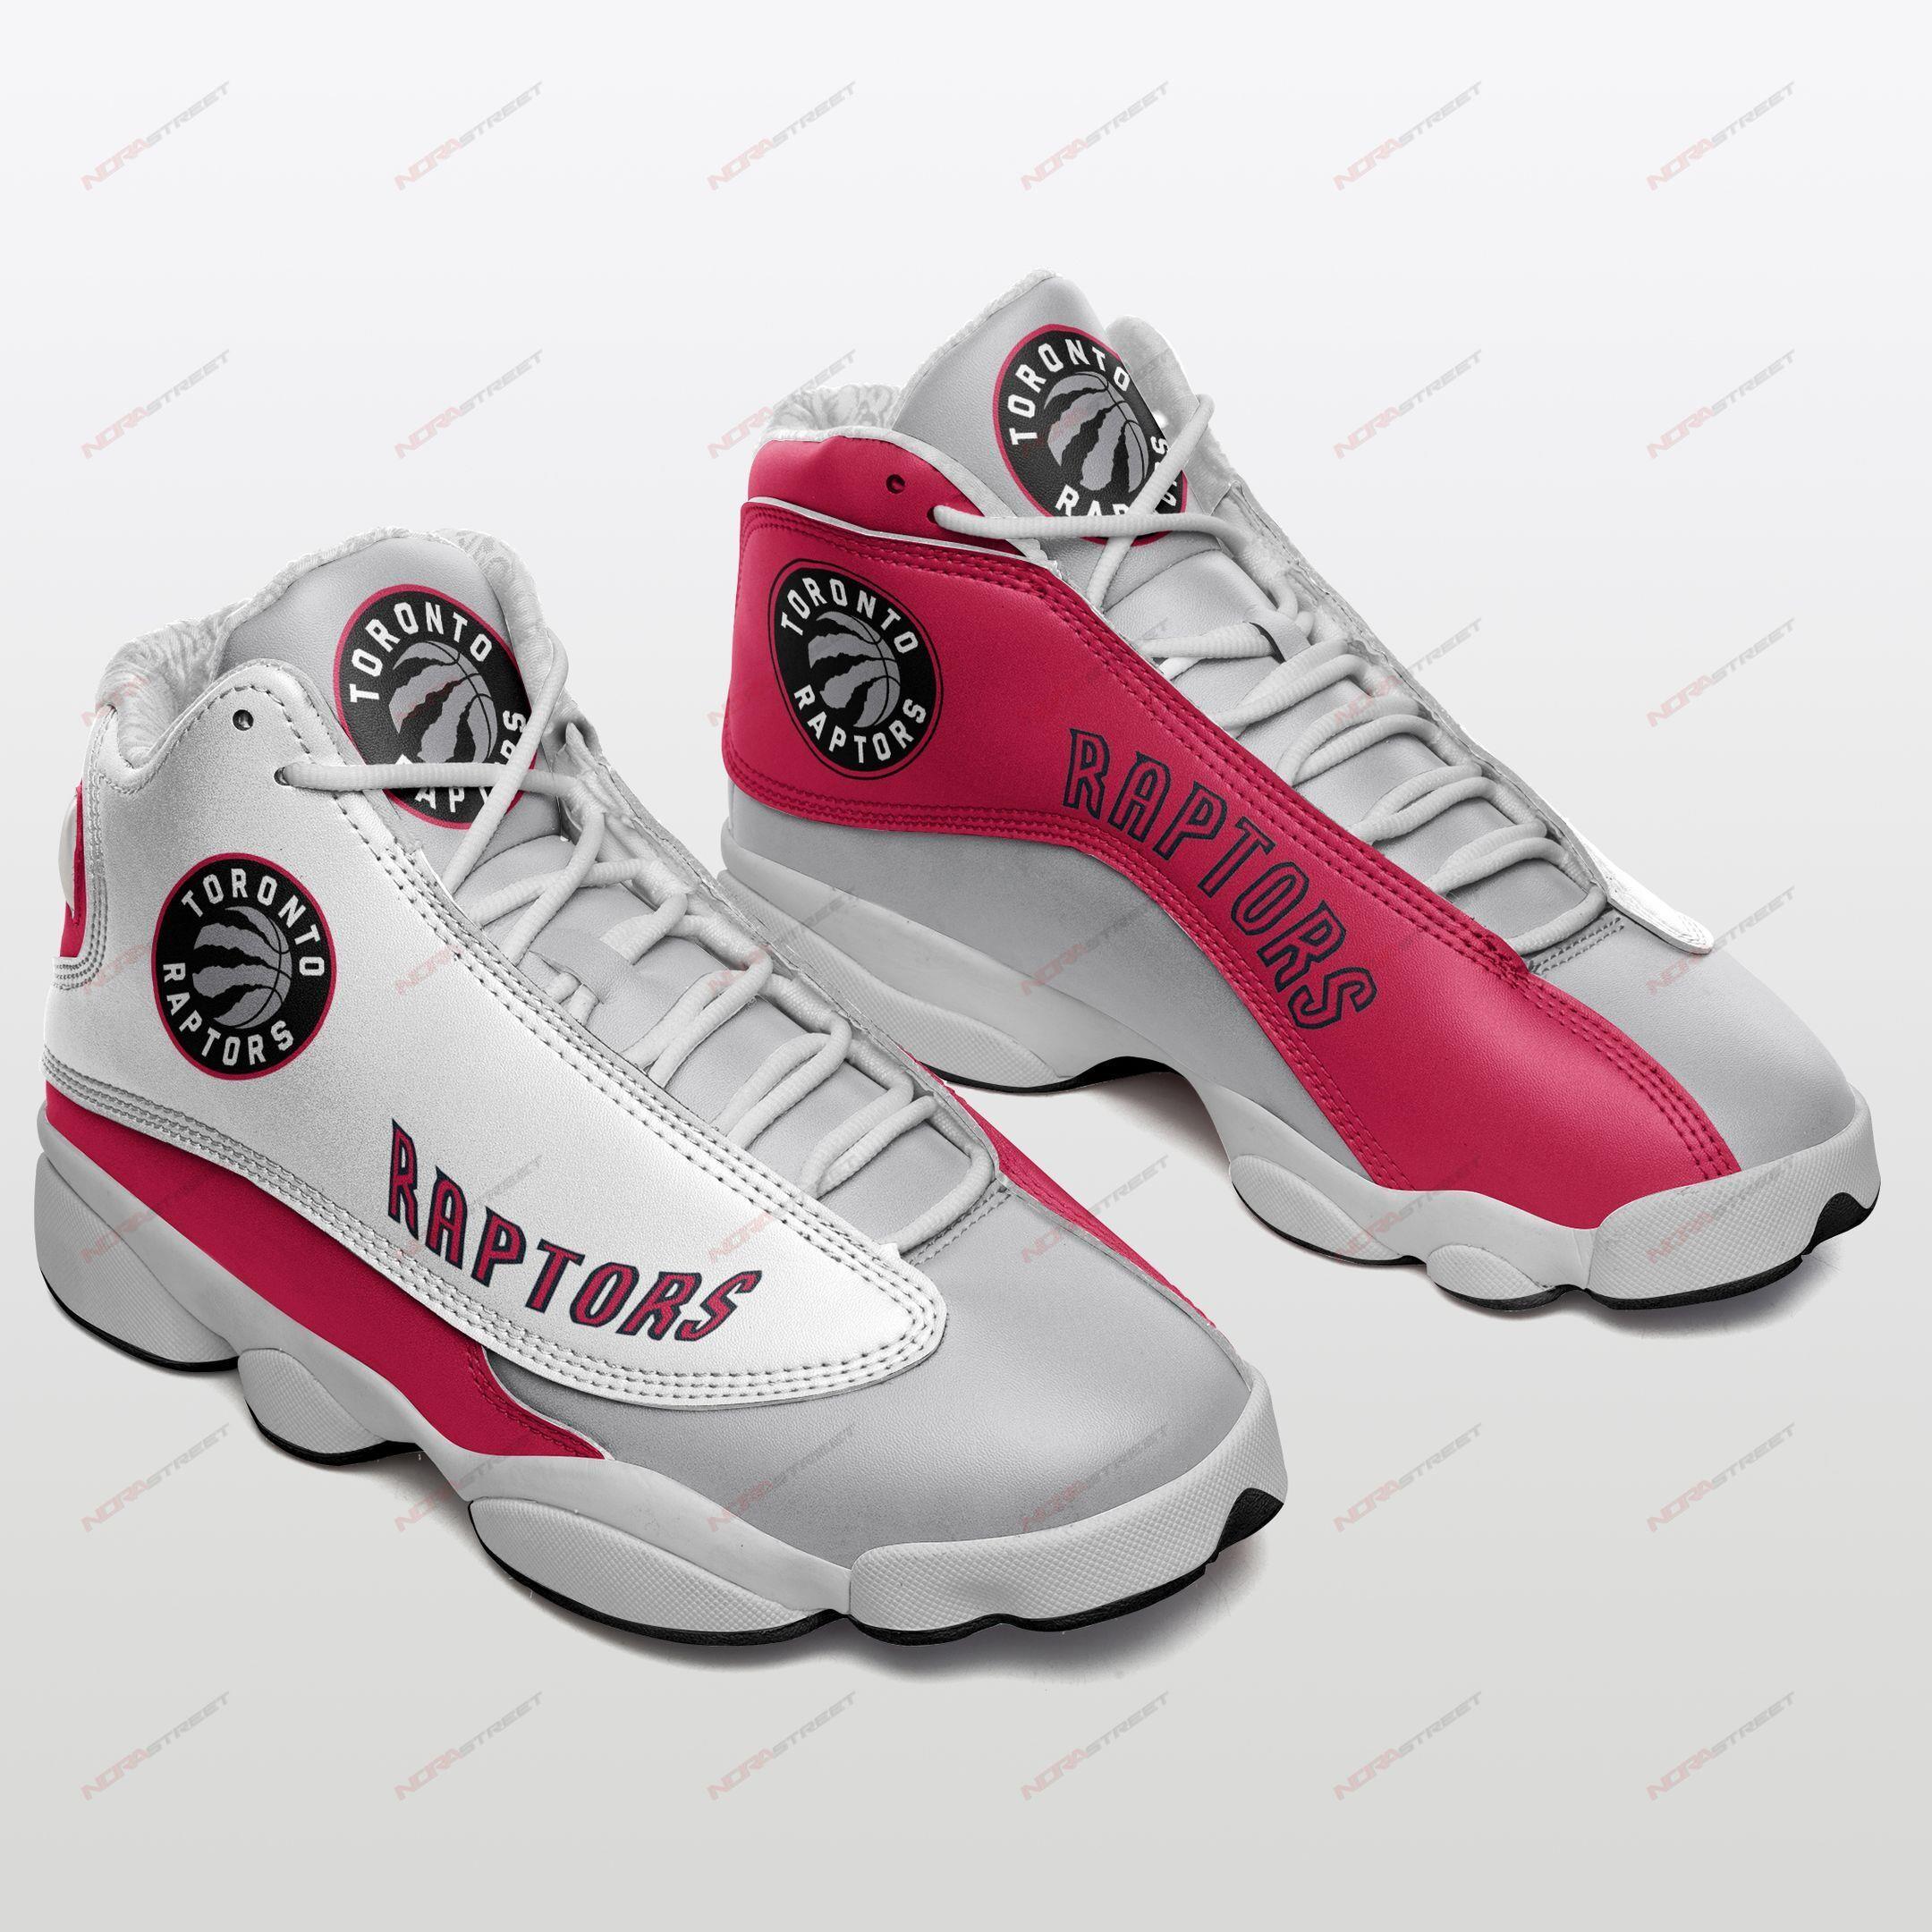 Toronto Raptors Air Jordan 13 Sneakers Sport Shoes